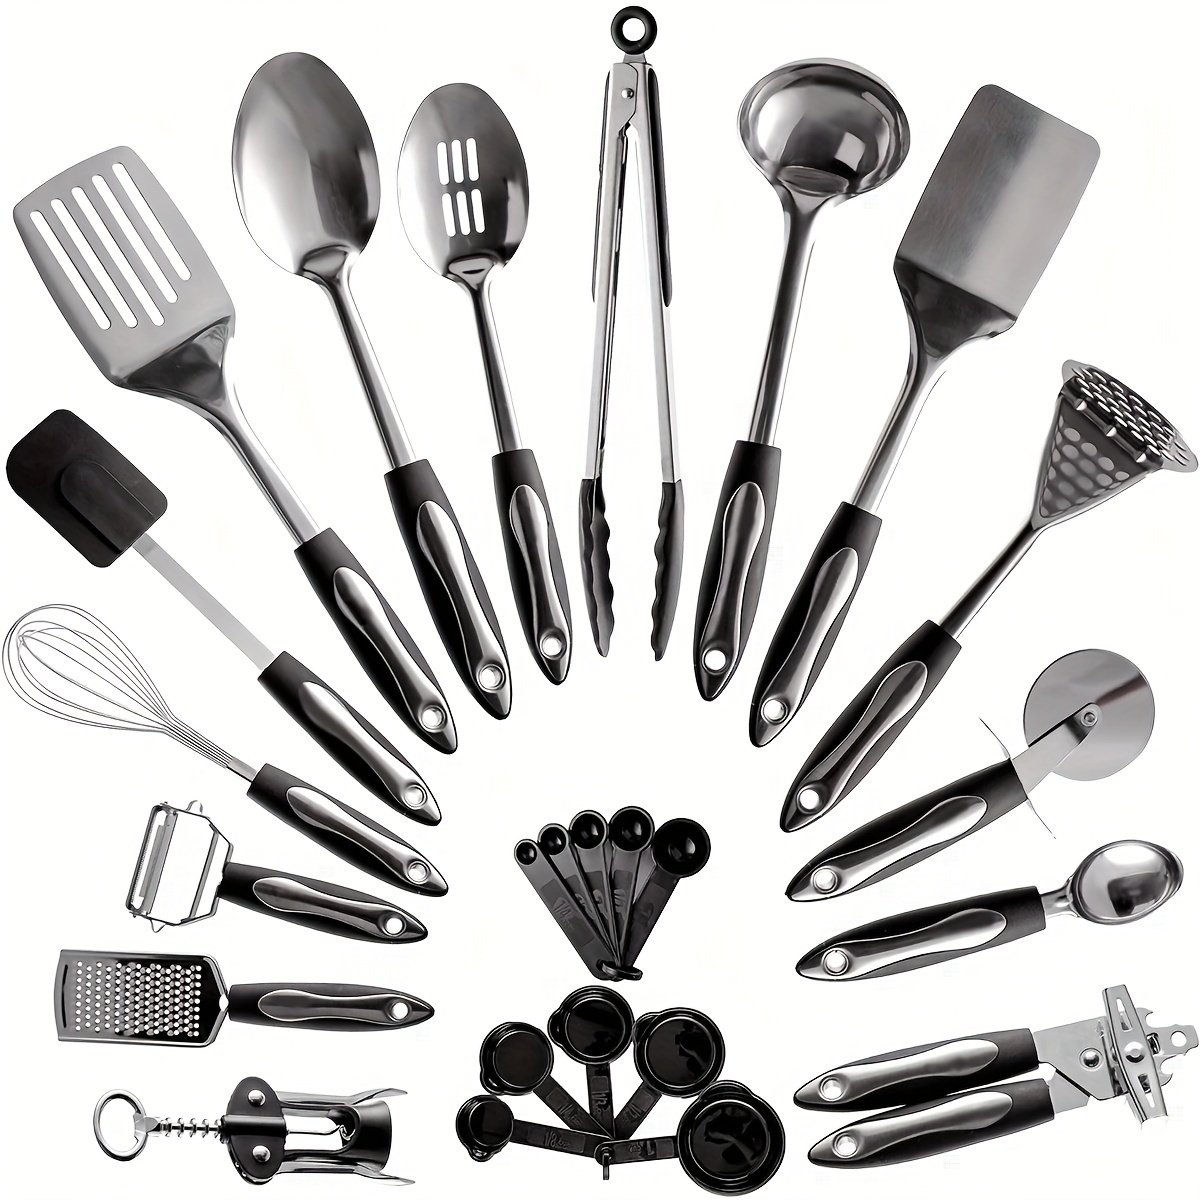  Juego de utensilios de cocina, 25 utensilios de cocina de  nailon, utensilios de cocina con espátula, utensilios de cocina, juego de  utensilios de cocina, juego de herramientas de cocina : Hogar